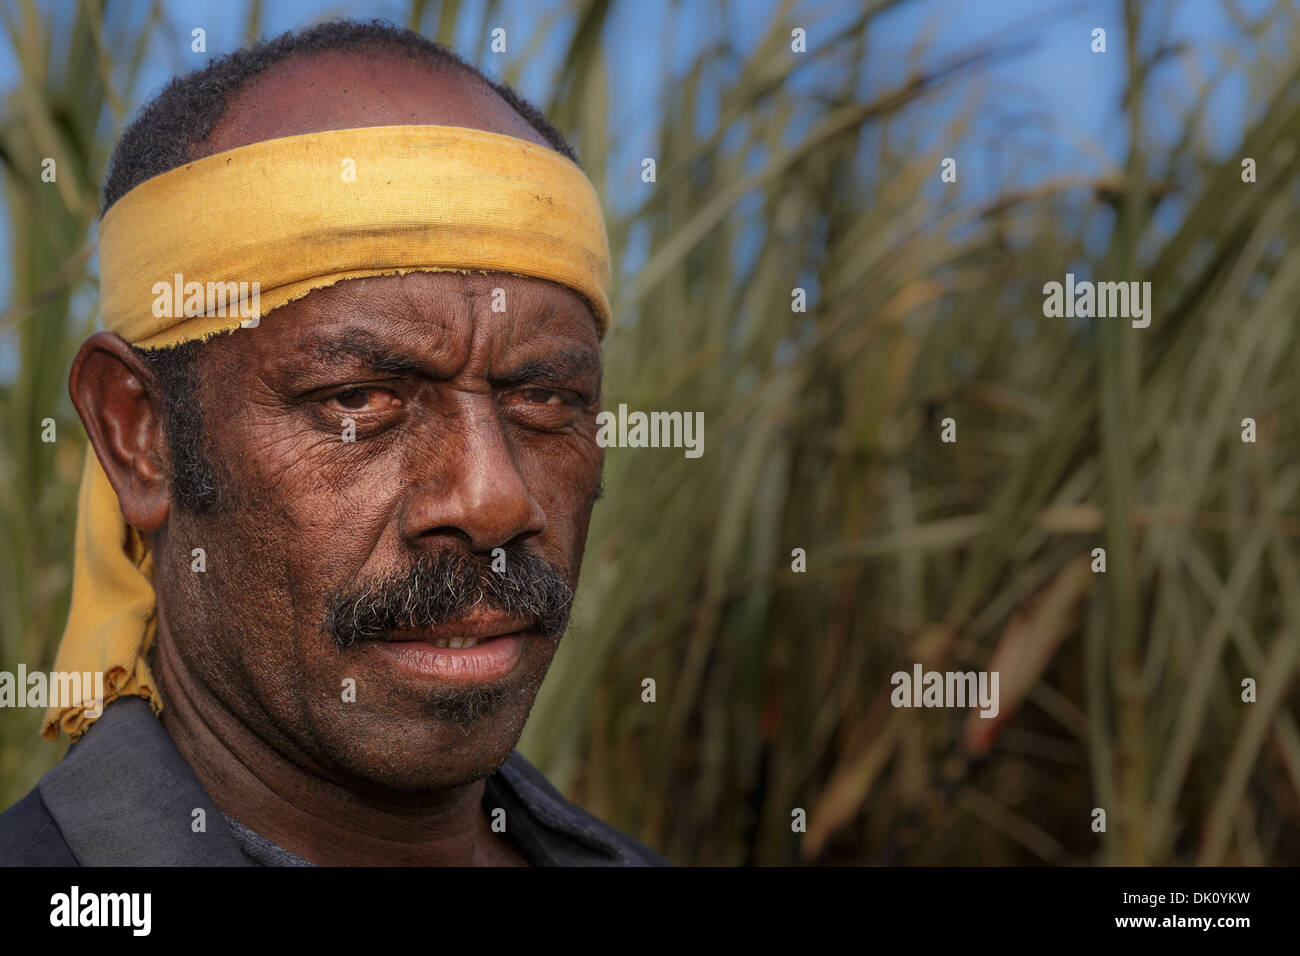 Lavoratore agricolo interessato su un campo di canna da zucchero, Sigatoka, Viti Levu, Isole Figi Foto Stock